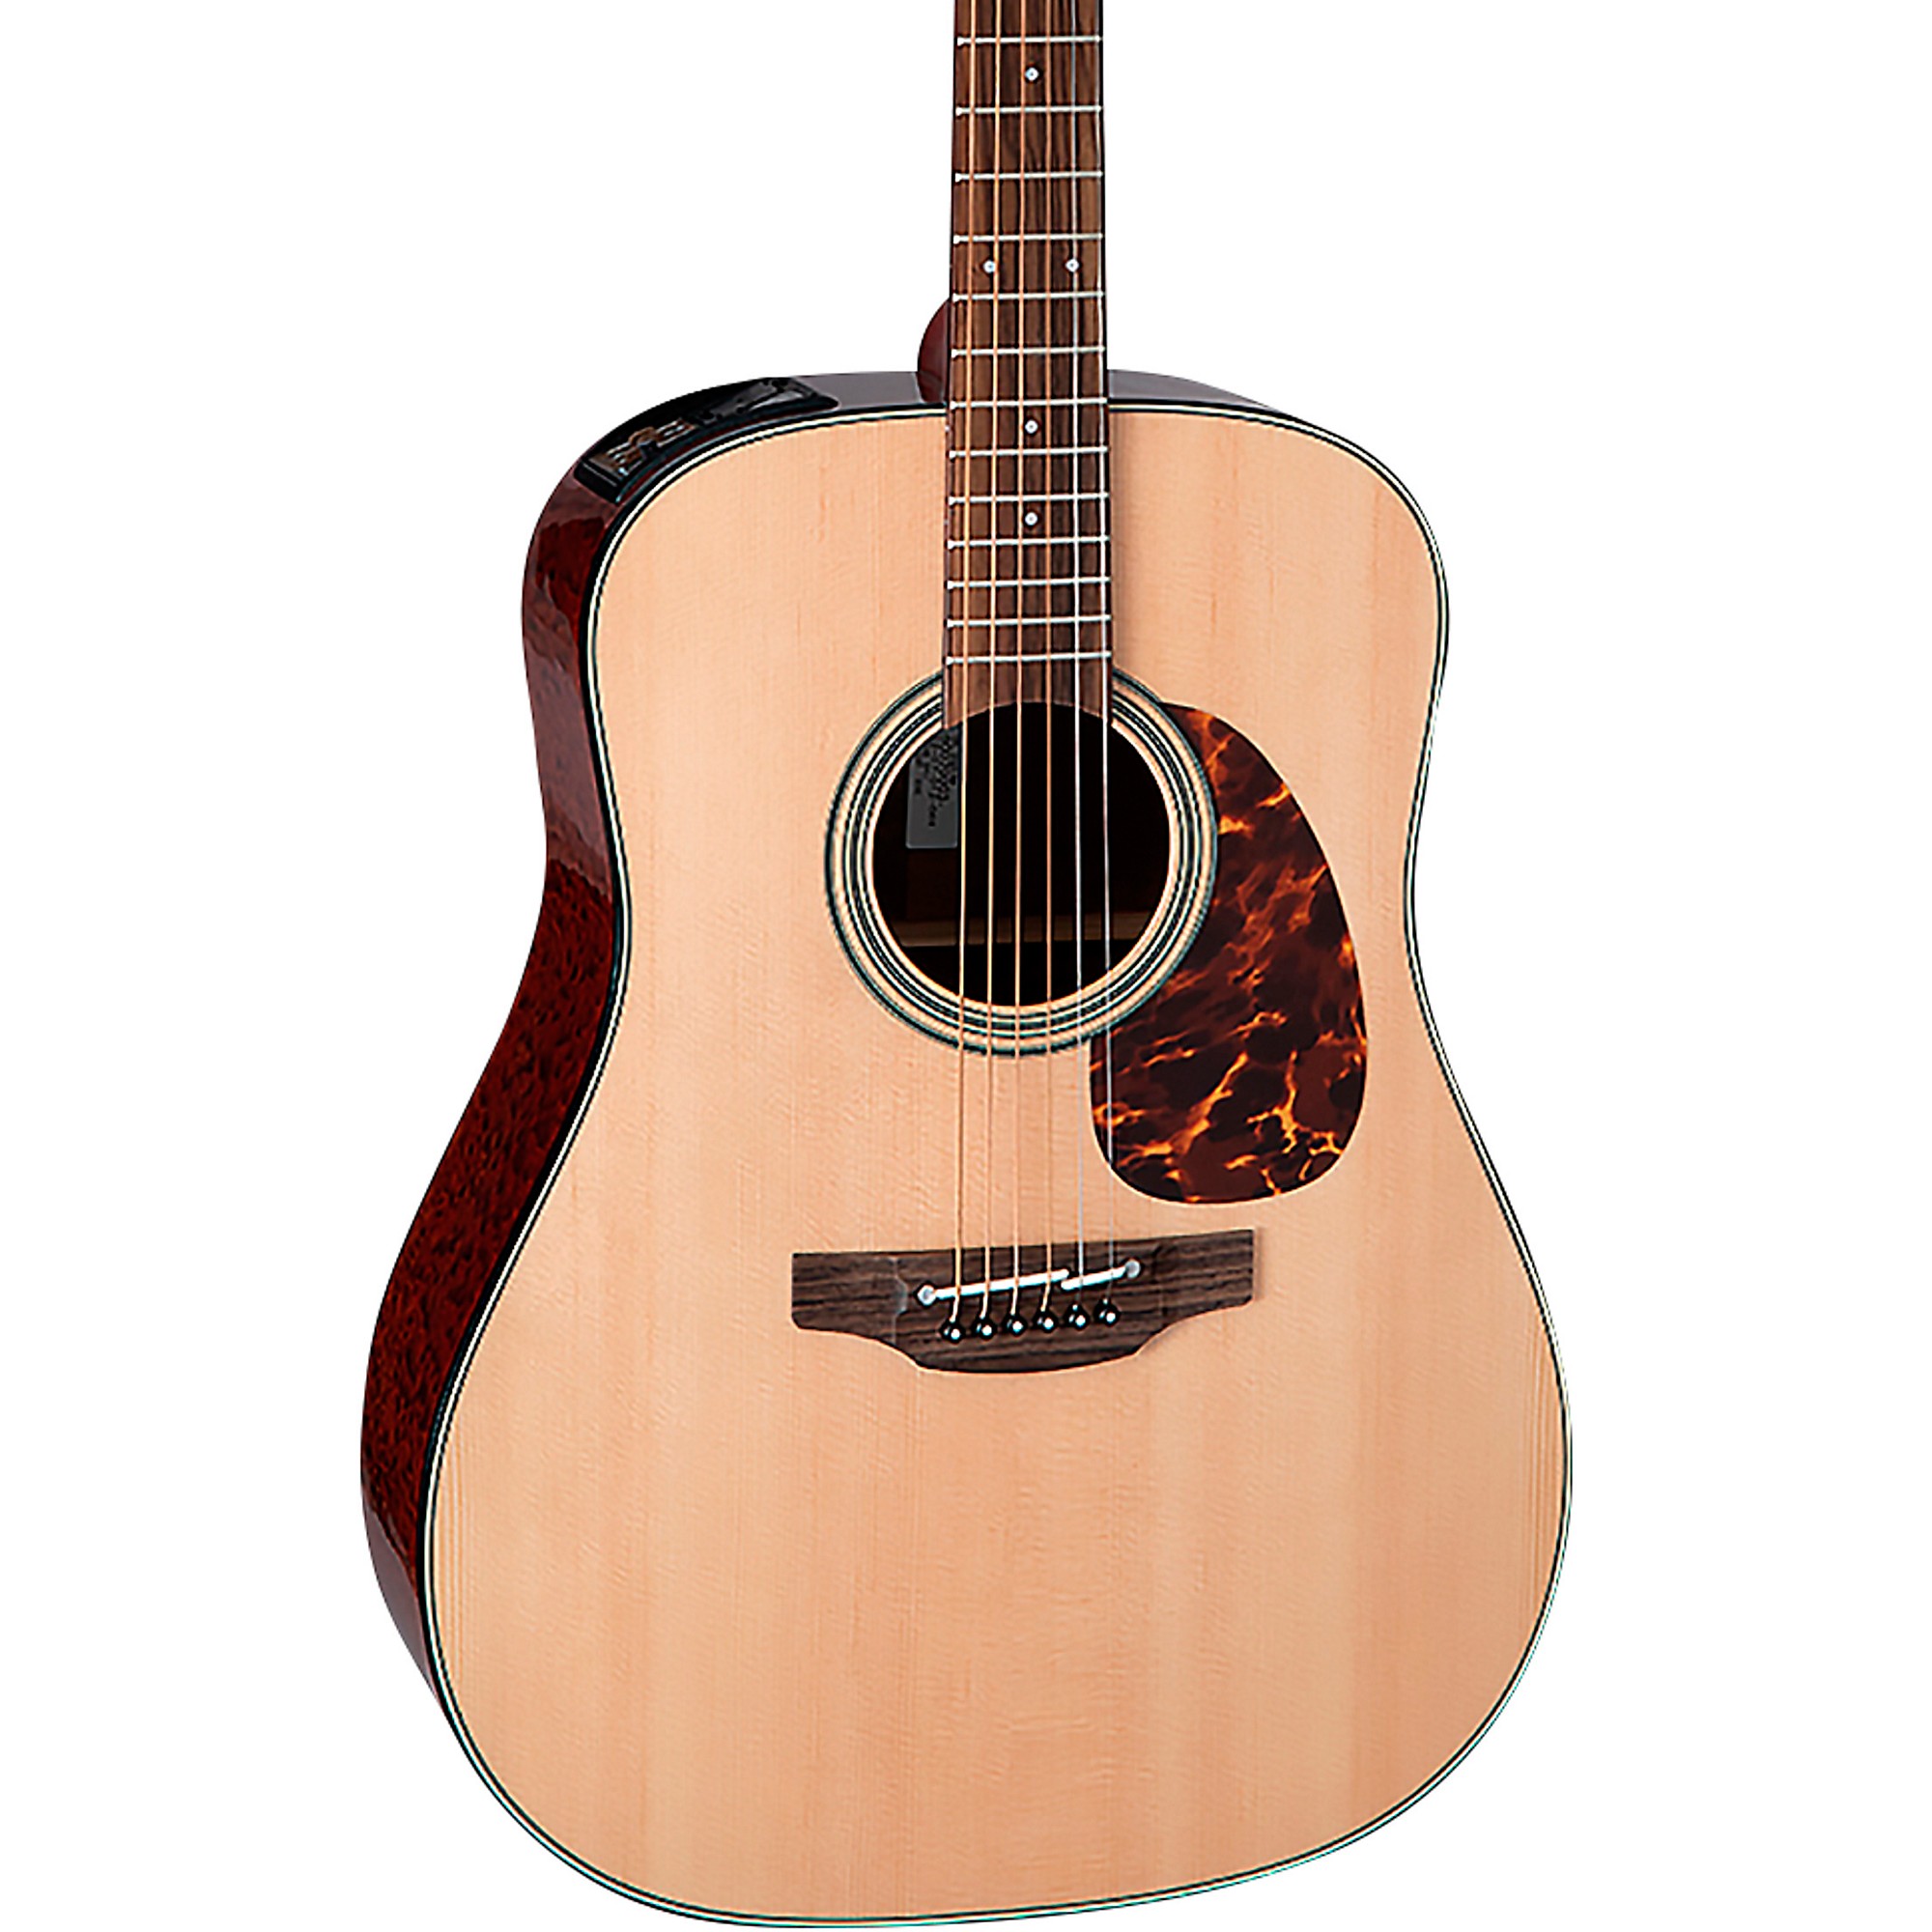 Акустически-электрическая гитара Takamine FT340 BS Natural цена и фото